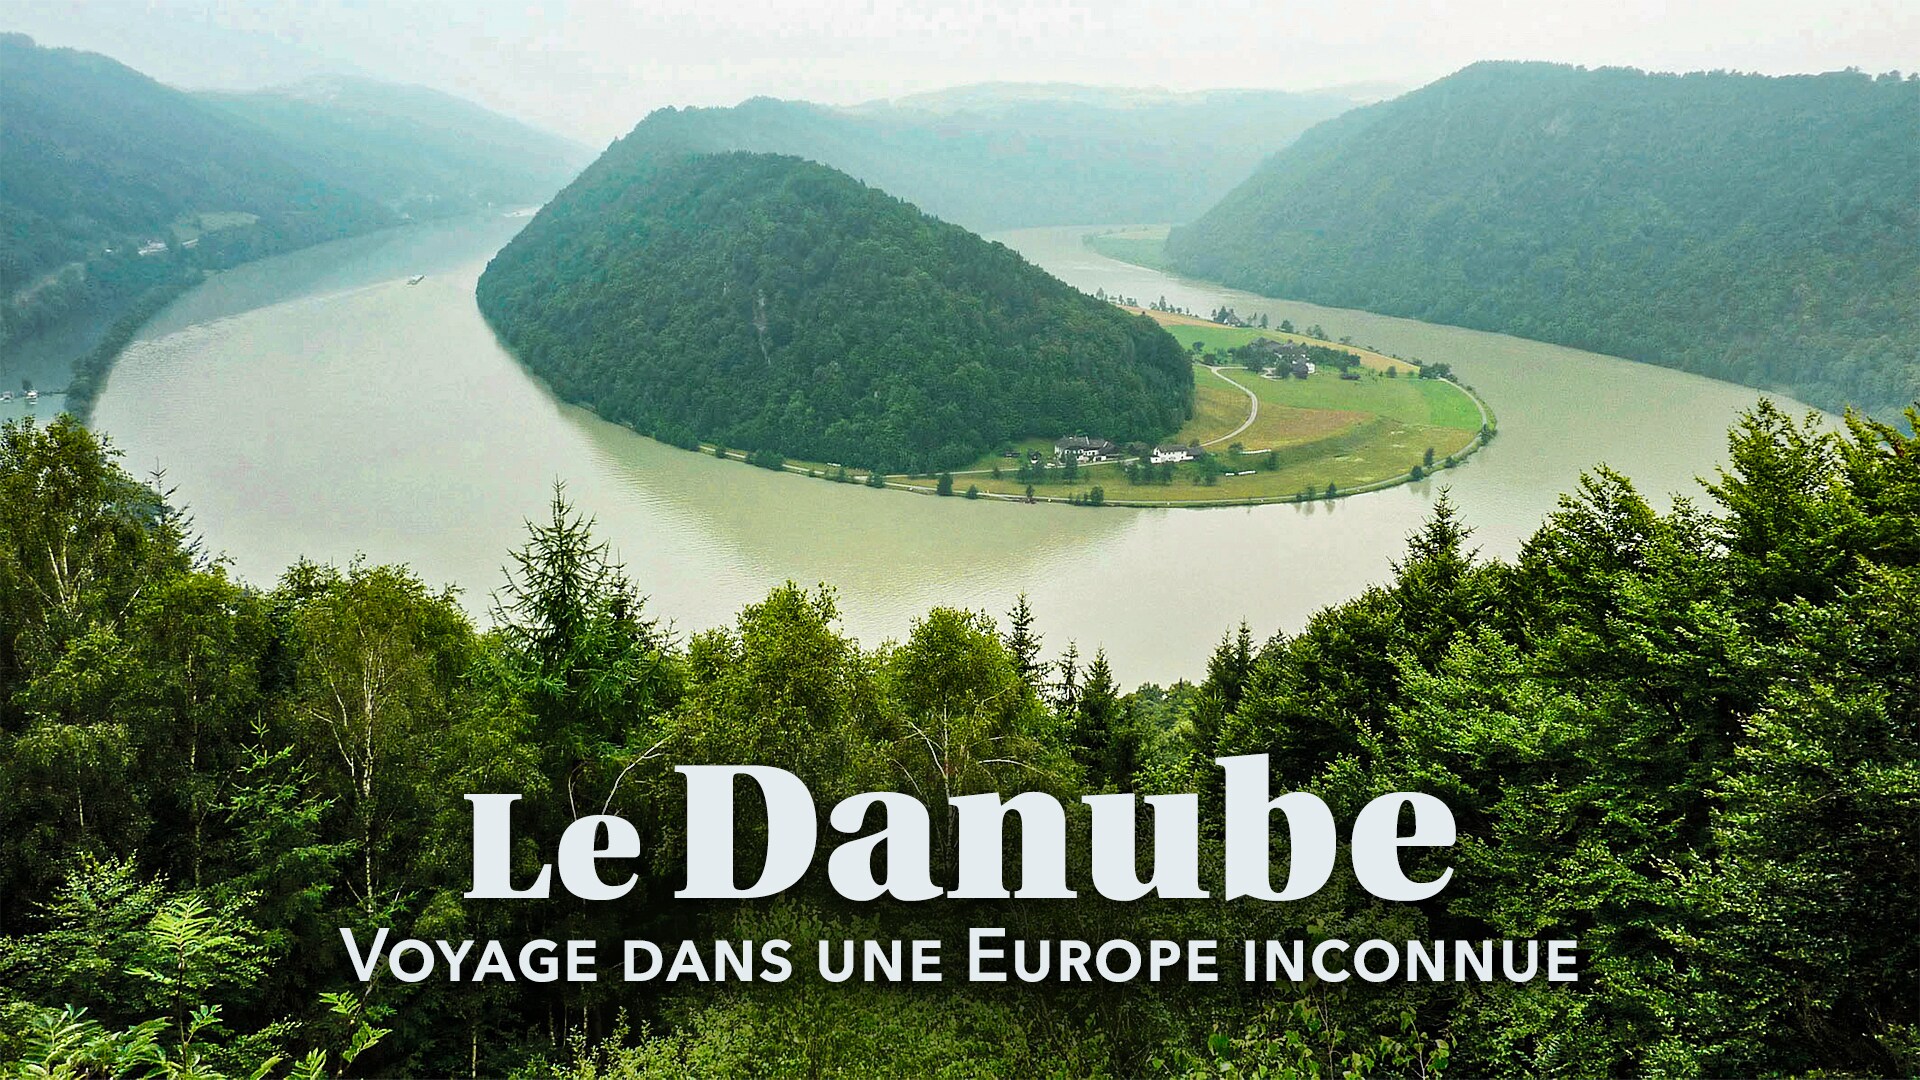 Le Danube - Voyage dans une Europe inconnue